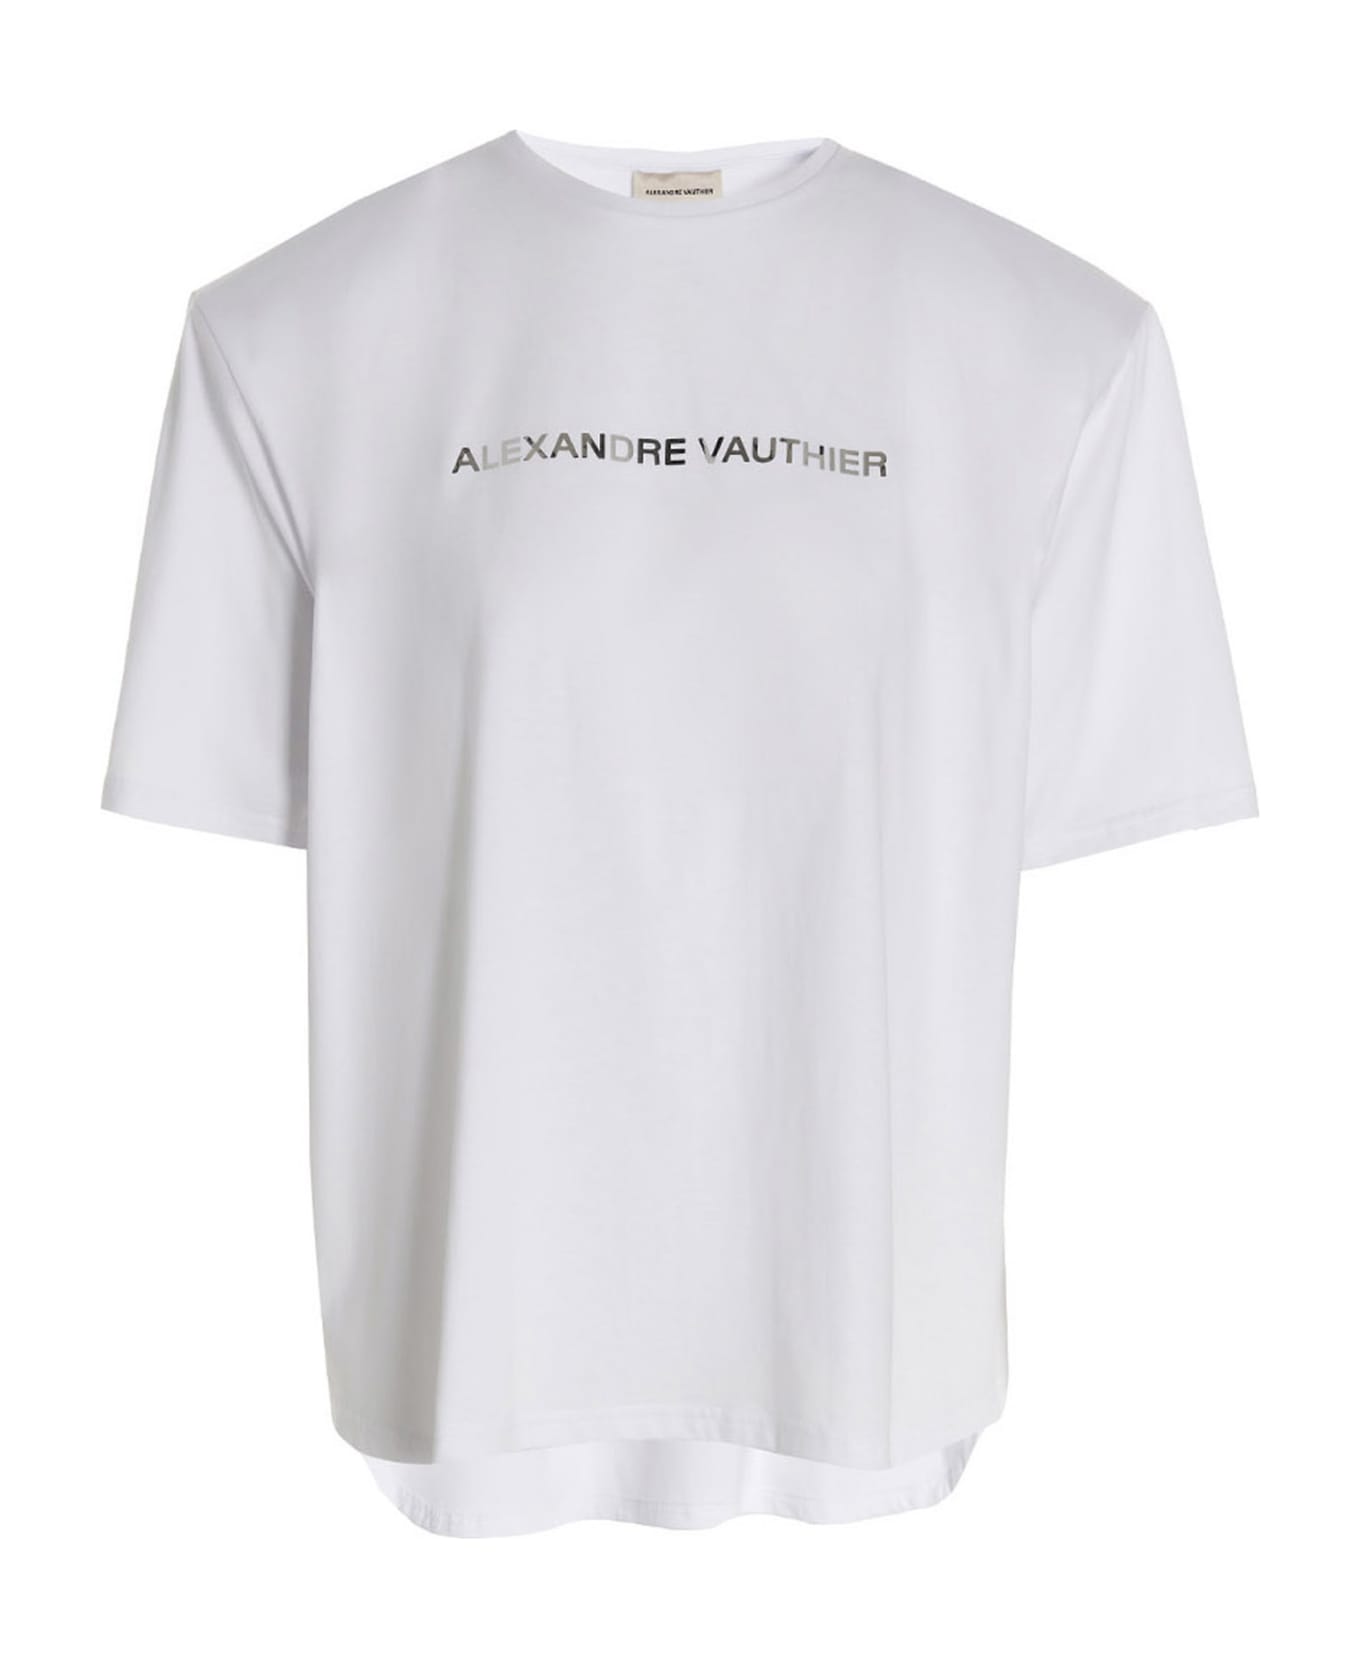 Alexandre Vauthier T-shirt 'alexandre Vauthier Padded' - White